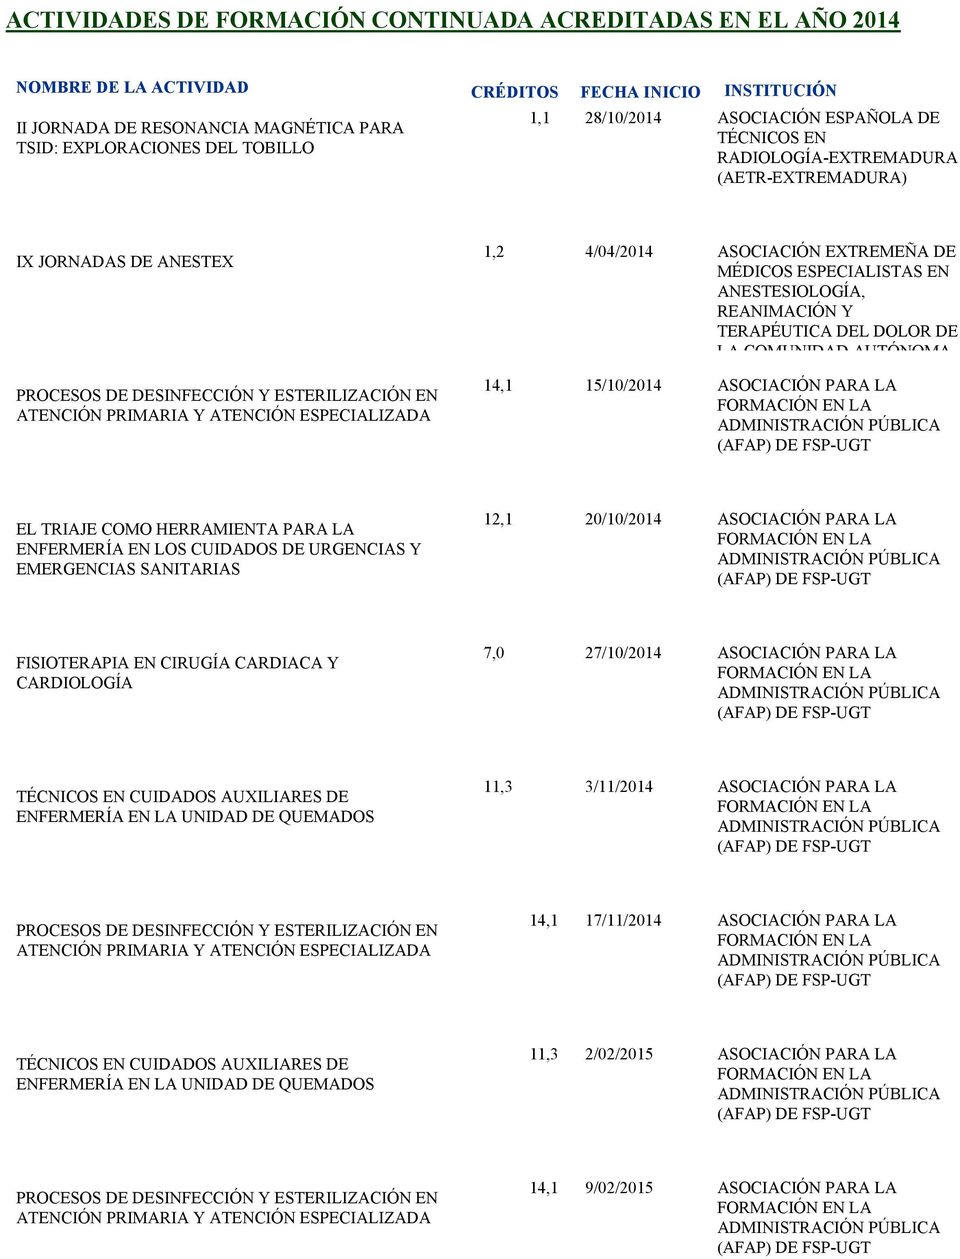 COMUNIDAD AUTÓNOMA 14,1 15/10/2014 ASOCIACIÓN PARA LA FORMACIÓN EN LA ADMINISTRACIÓN PÚBLICA (AFAP) DE FSP-UGT EL TRIAJE COMO HERRAMIENTA PARA LA ENFERMERÍA EN LOS CUIDADOS DE URGENCIAS Y EMERGENCIAS